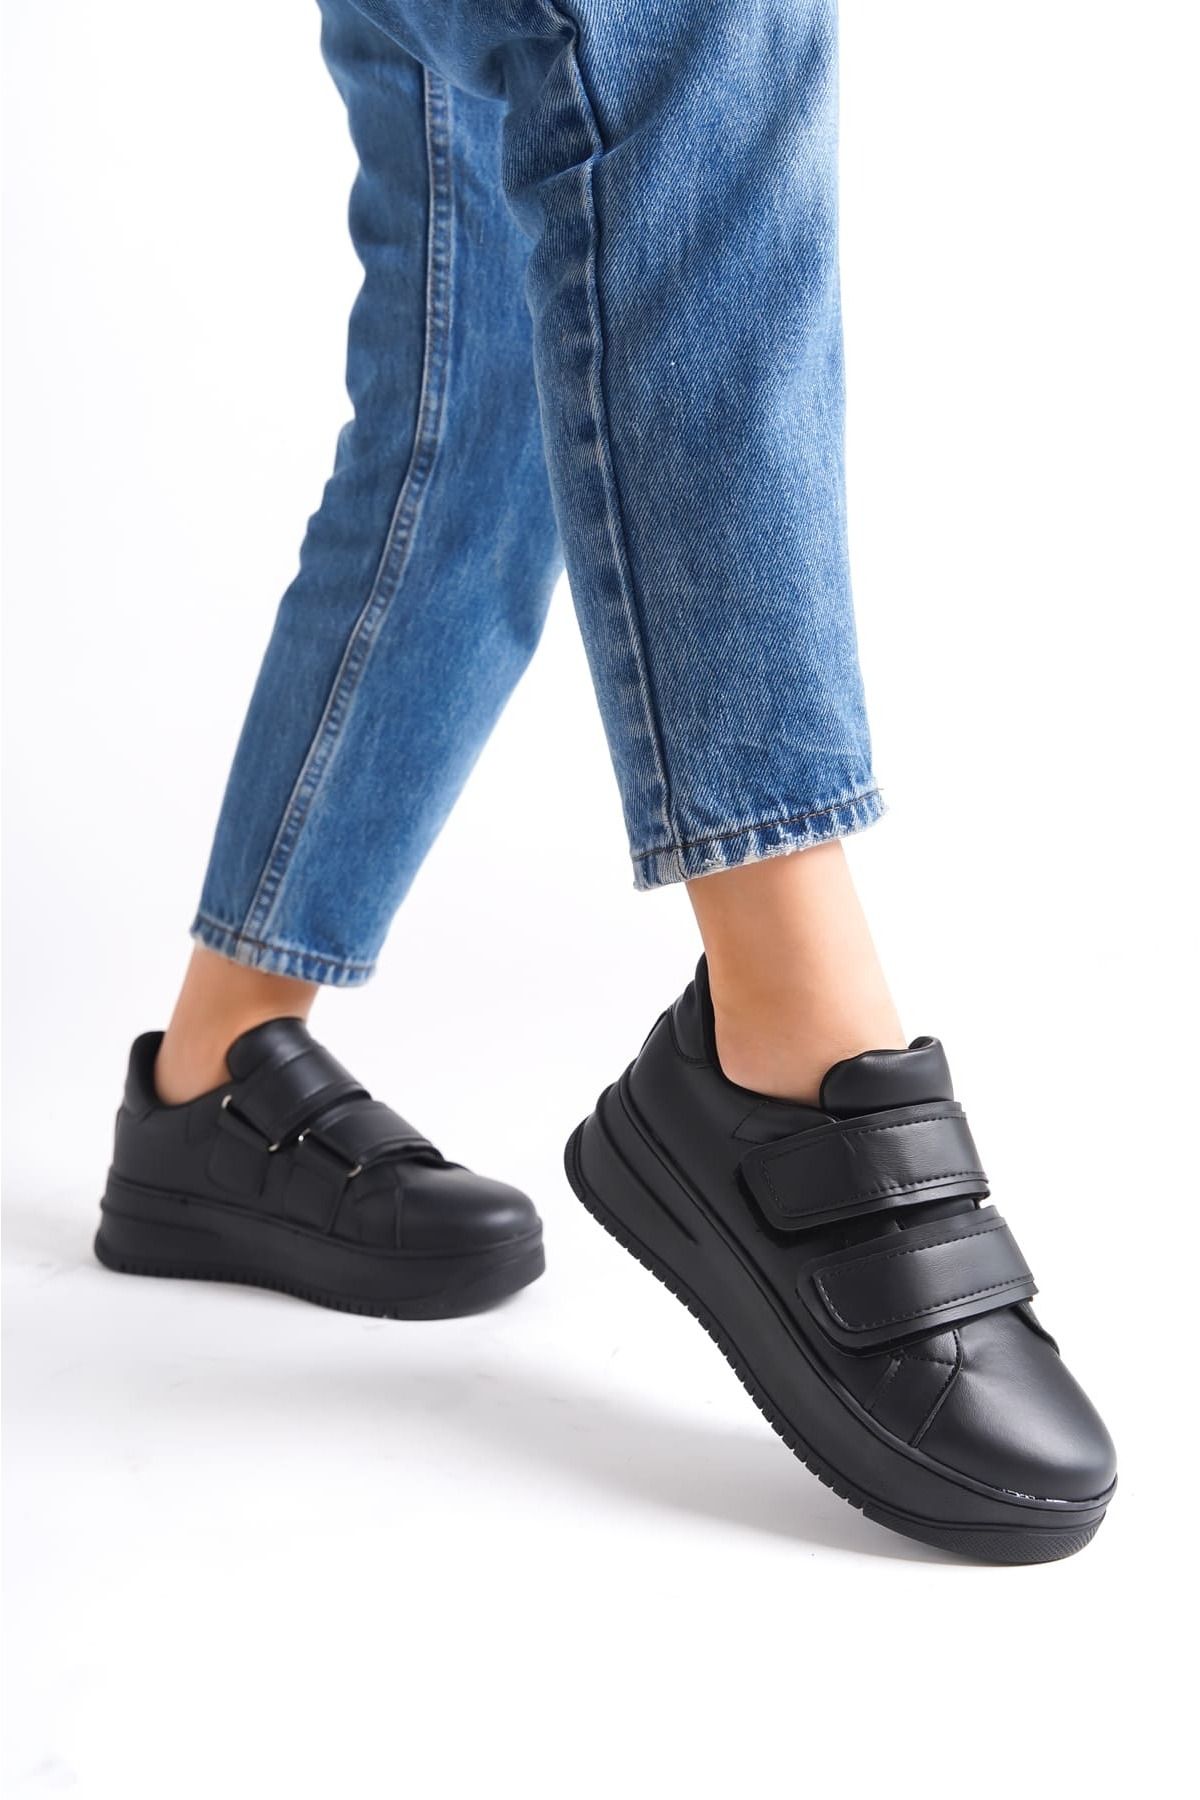 Mardel Store SERAH Bağcıksız Cırt Cırtlı Ortopedik Taban Kadın Sneaker Ayakkabı ST Siyah